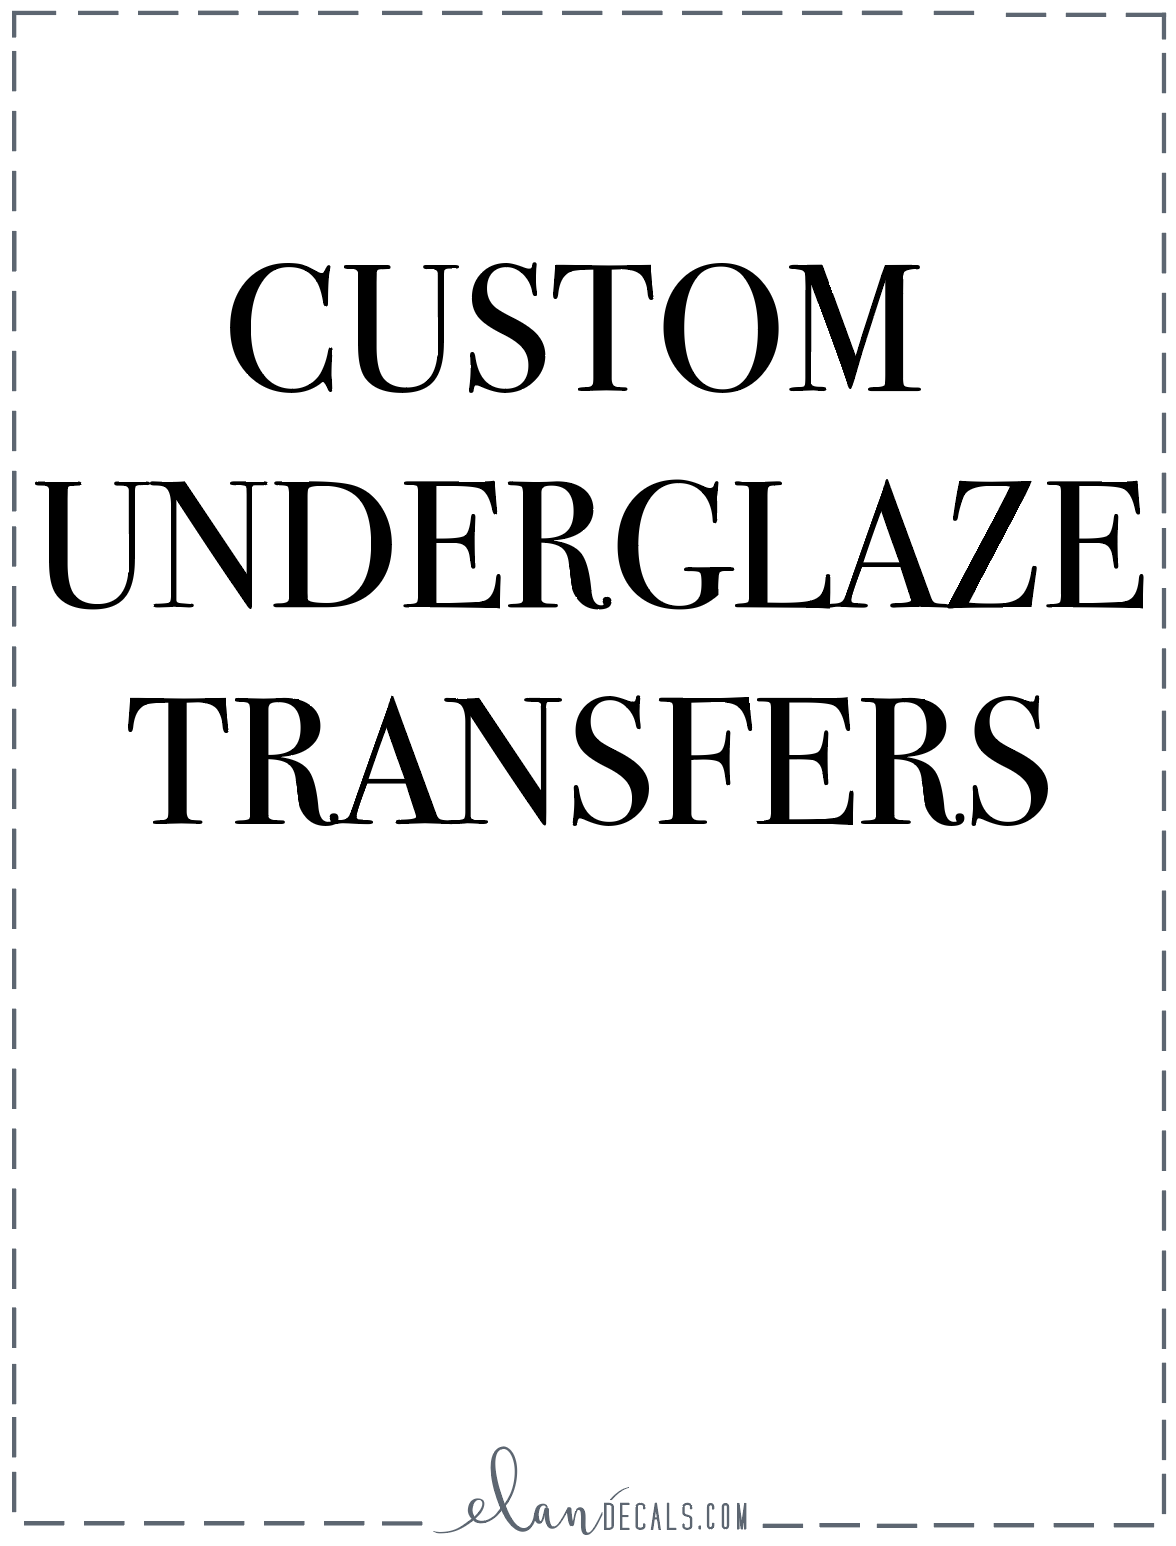 Custom Underglaze Transfers - Customers Design